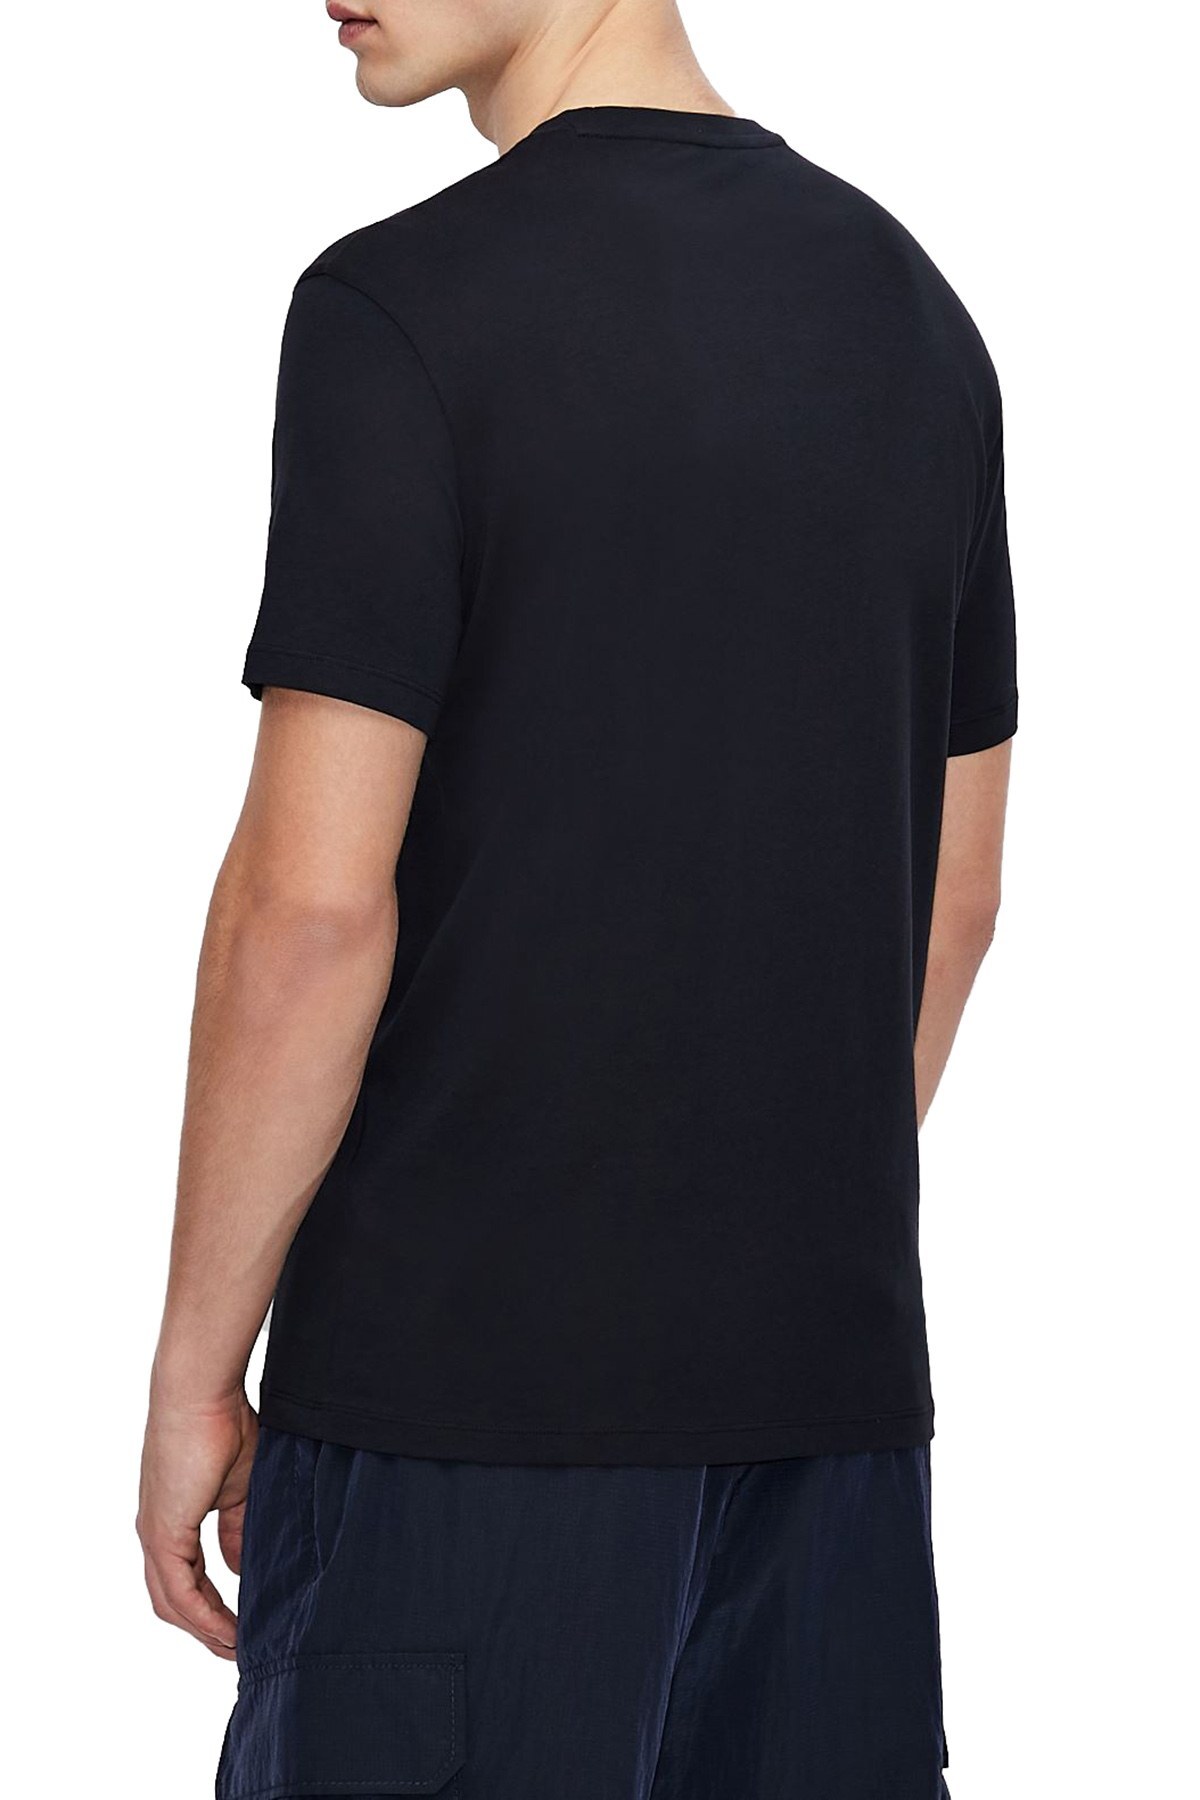 Armani Exchange Erkek T Shirt 3KZTNE ZJH4Z 1510 LACİVERT